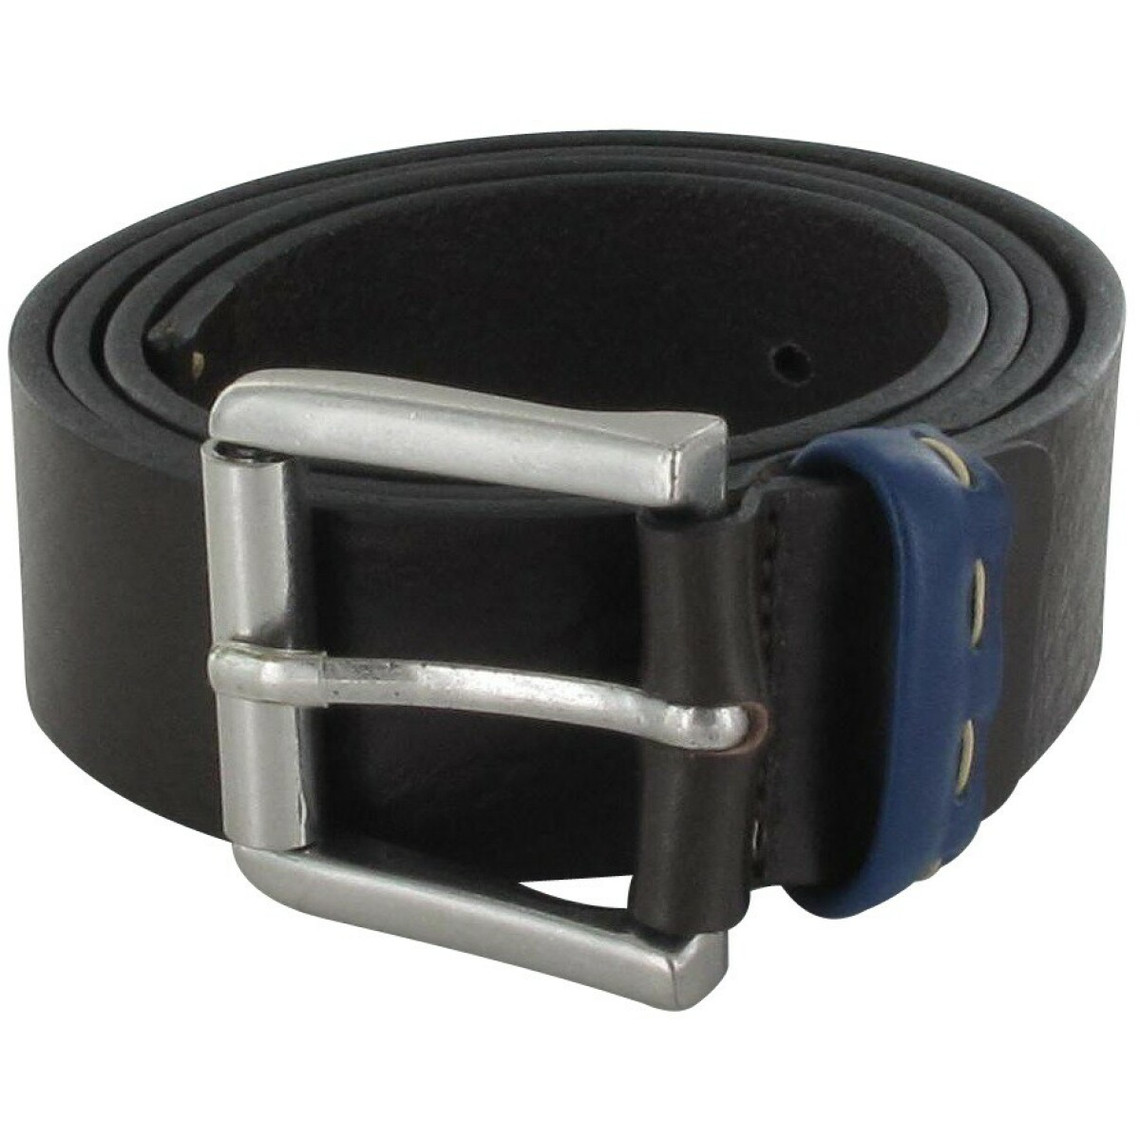 ceinture bicolore - cuir lisse noir / bleu